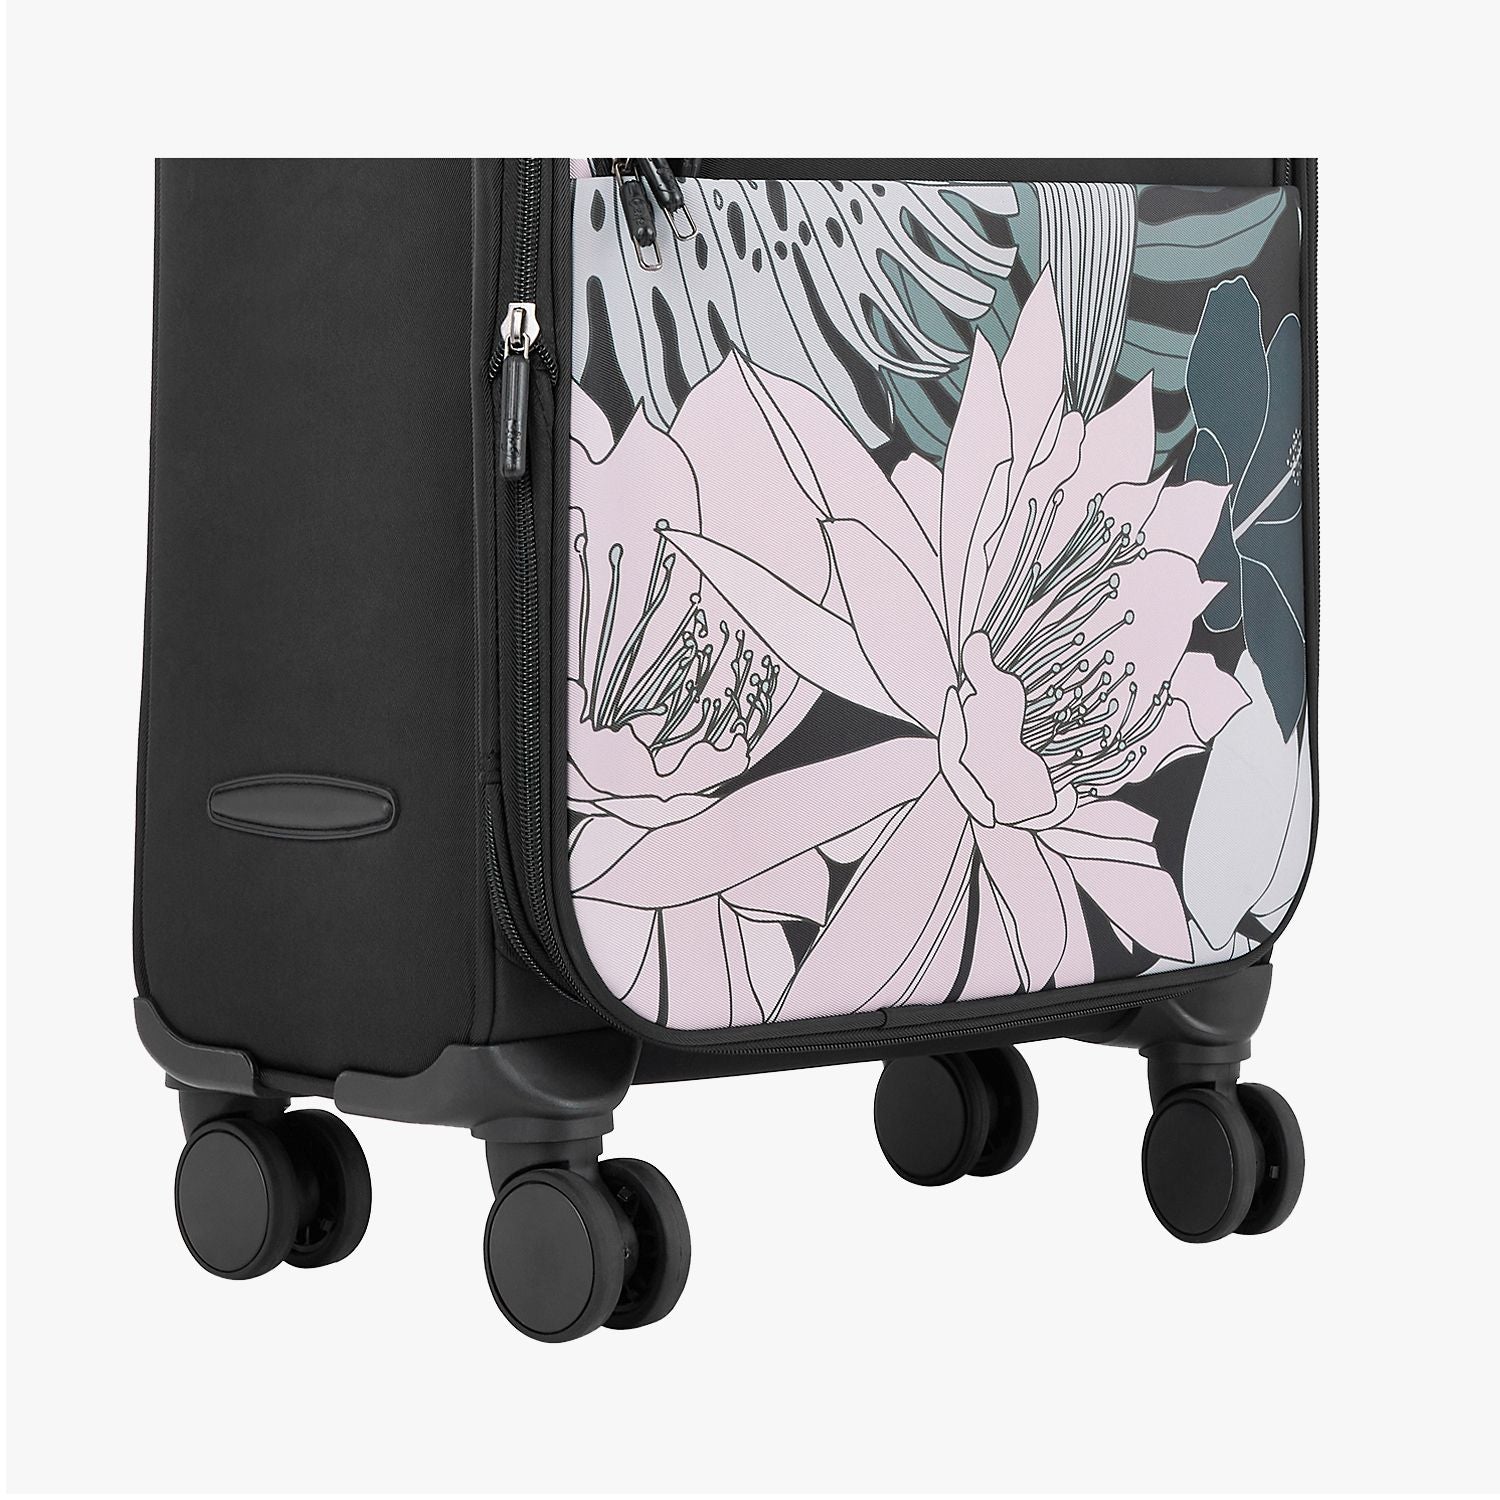 Genie Bahamas Black Trolley Bag With Dual Wheels & TSA Lock